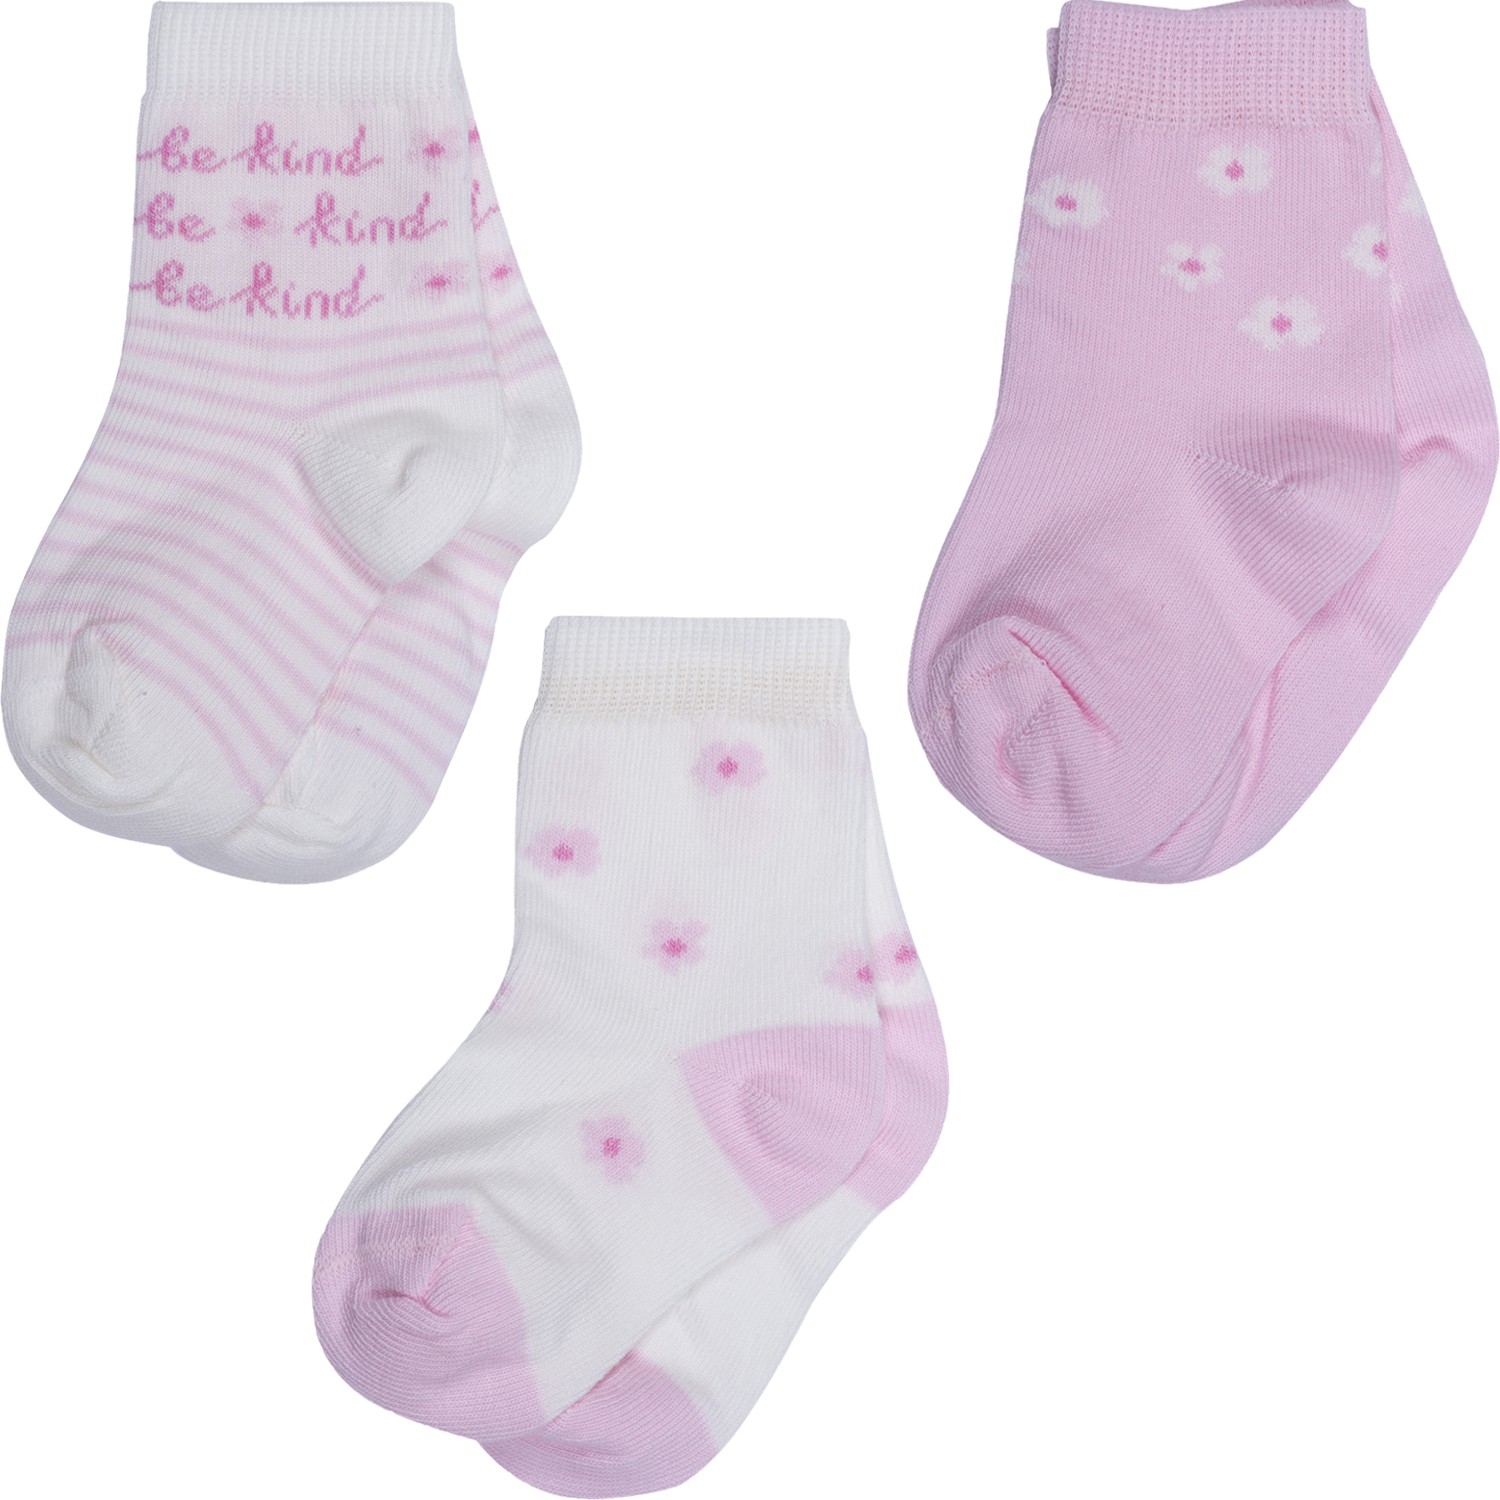 Носки для девочек Rusocks 3-Д3-13793 цв. бежевый; розовый р. 8-10 бюстгальтер женский t shirt t shirt розовый с деталями из сетки